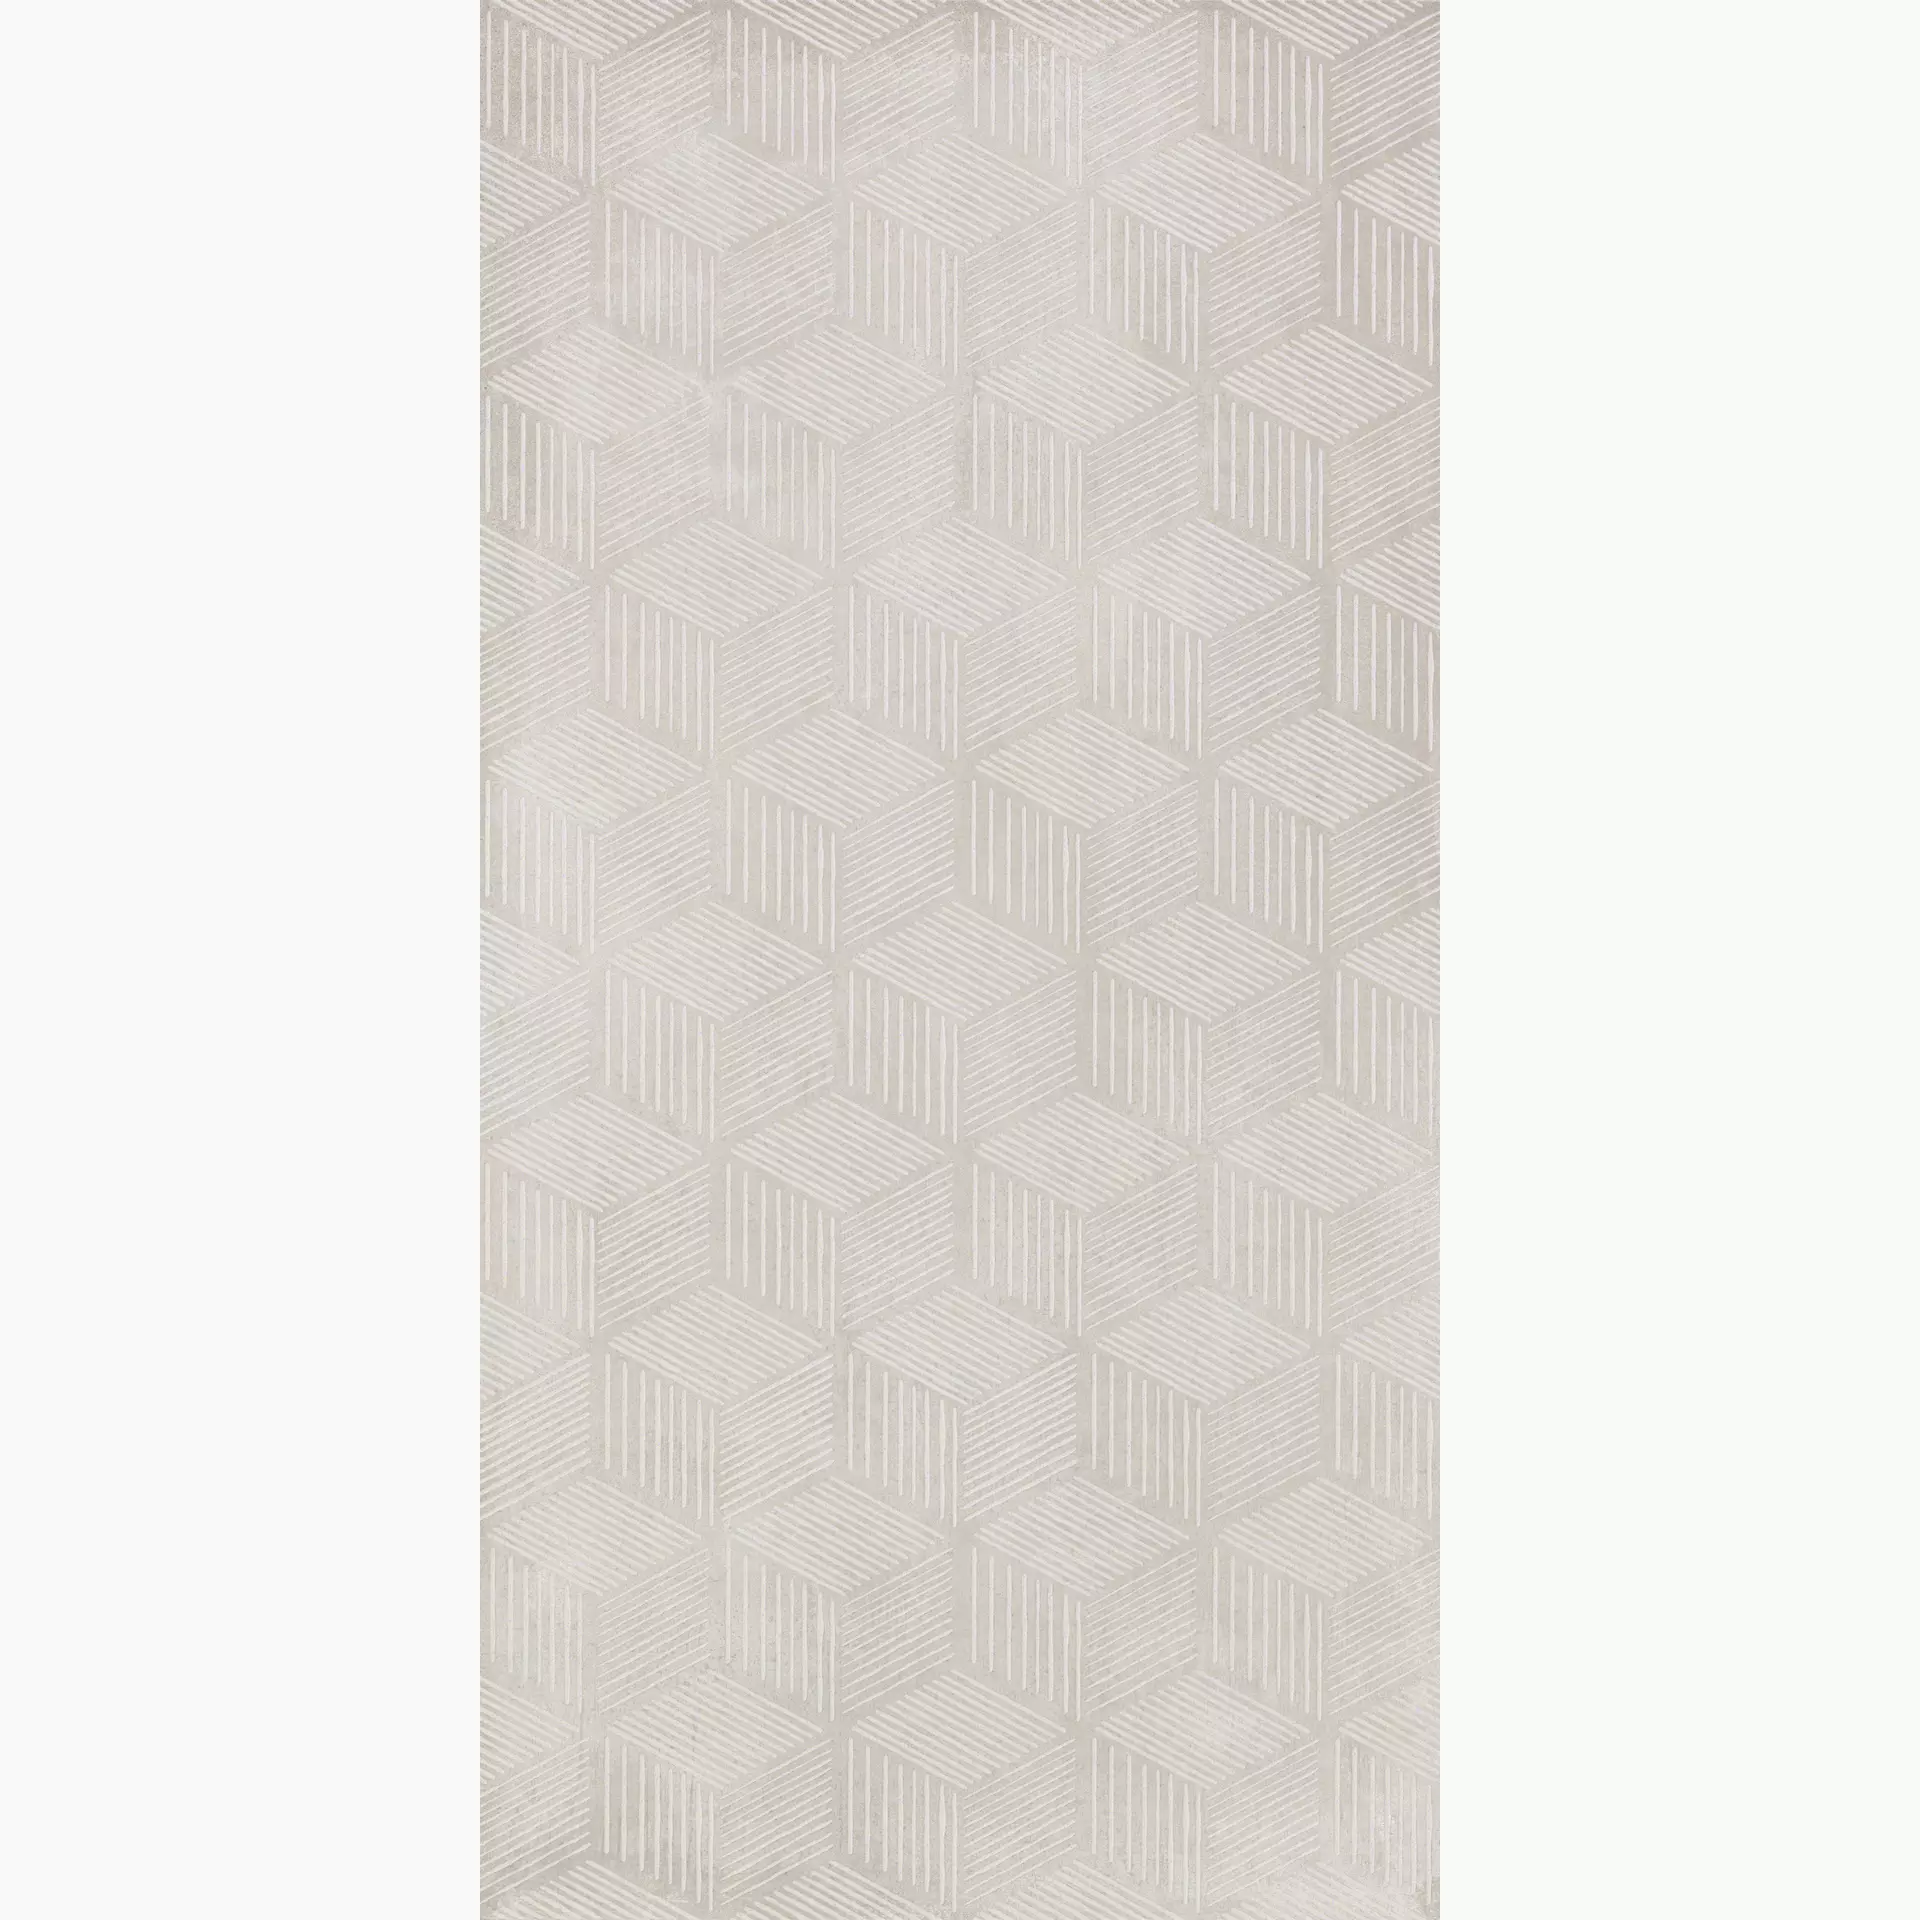 KRONOS Prima Materia Cenere Naturale Cenere 8207 natur 60x120cm Hexagon 9mm